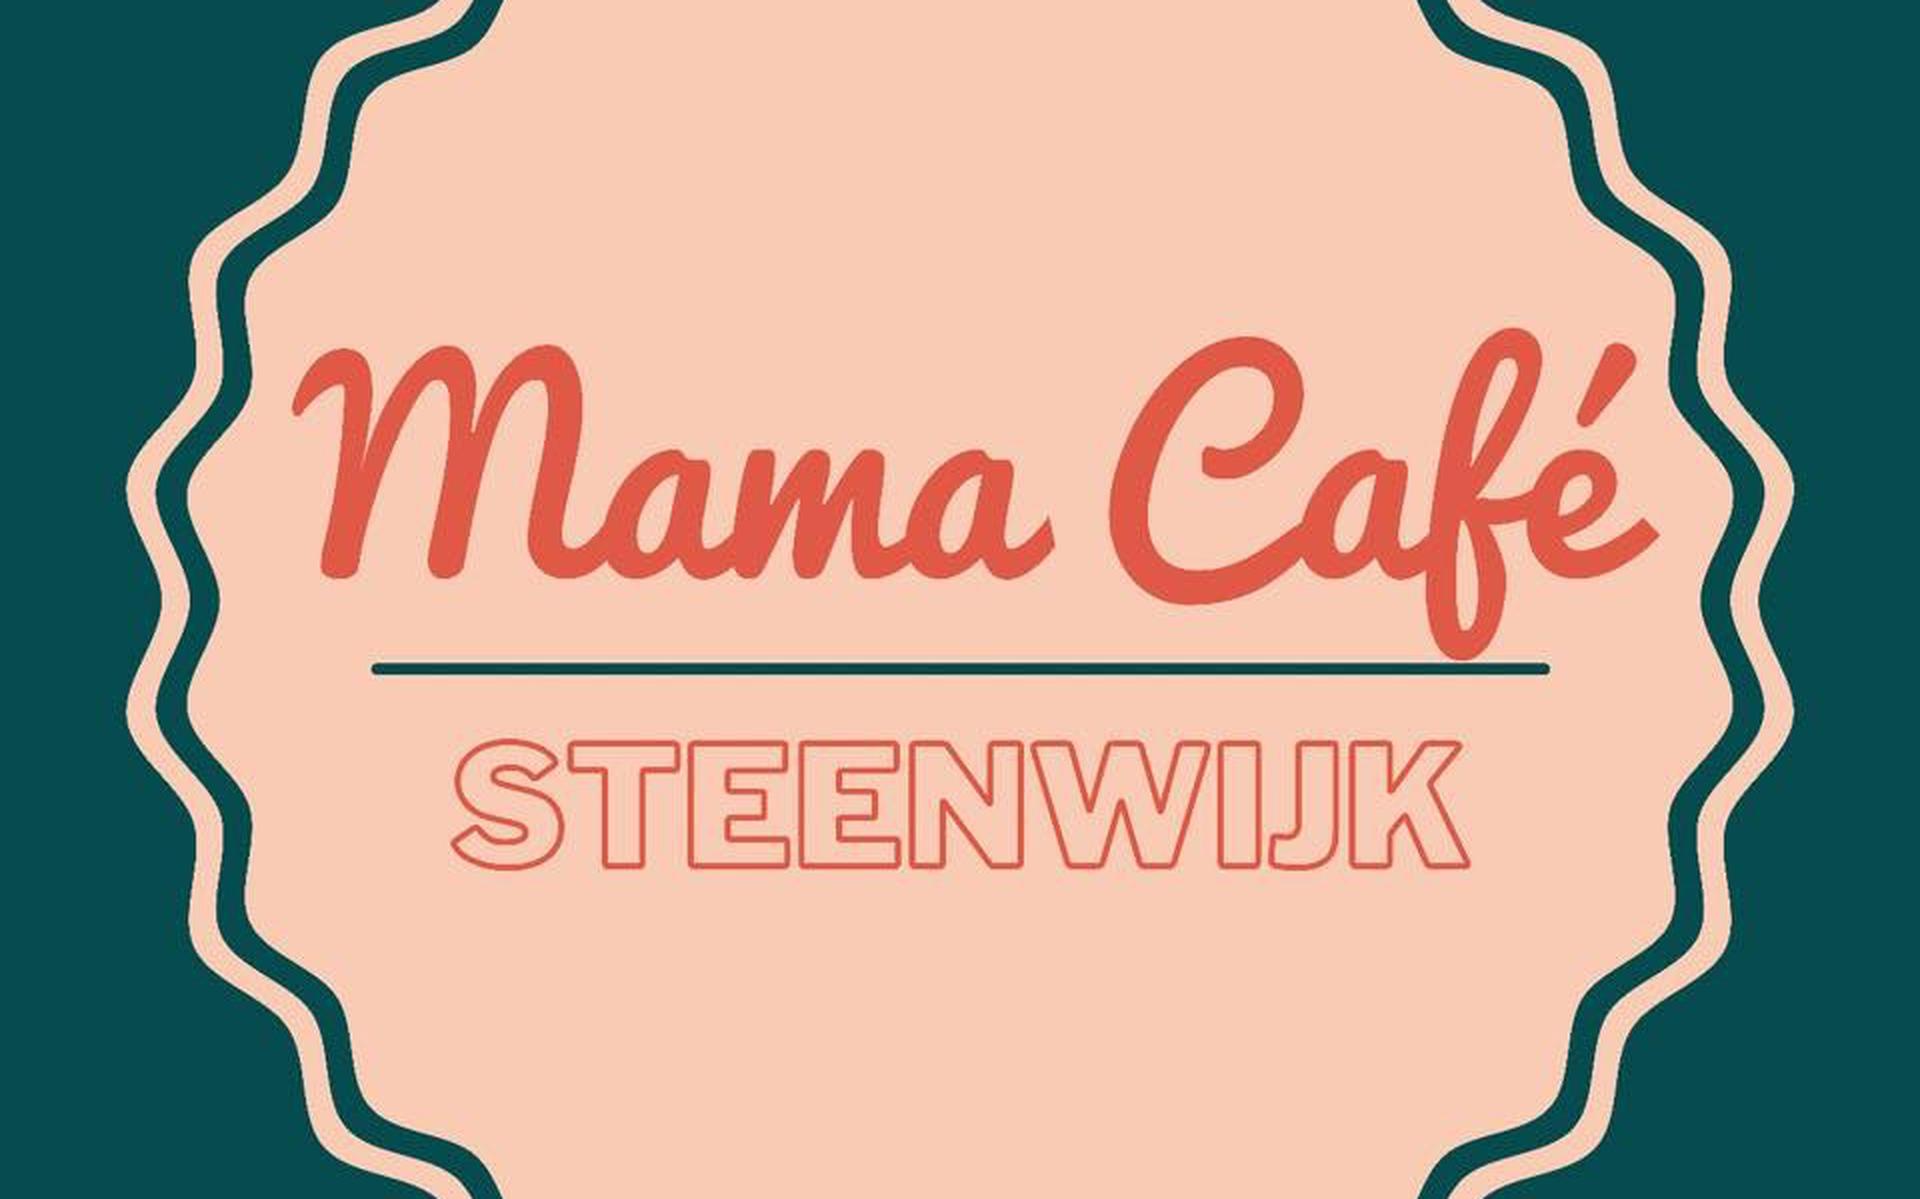 Het mama café Steenwijk bestaat 10 jaar.